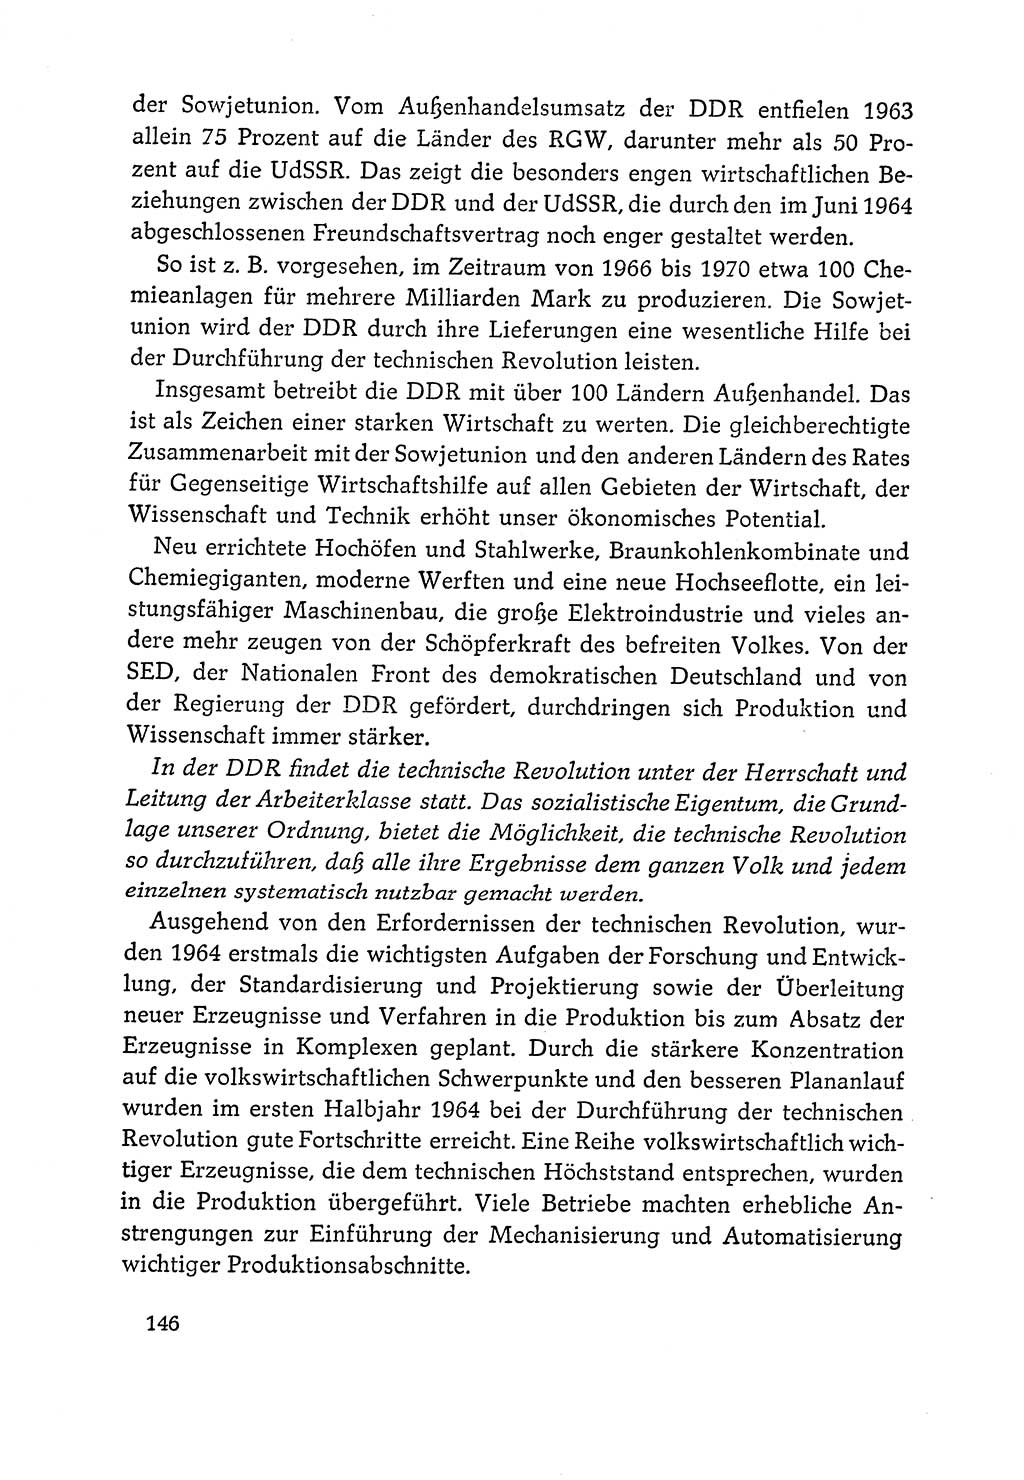 Dokumente der Sozialistischen Einheitspartei Deutschlands (SED) [Deutsche Demokratische Republik (DDR)] 1964-1965, Seite 146 (Dok. SED DDR 1964-1965, S. 146)